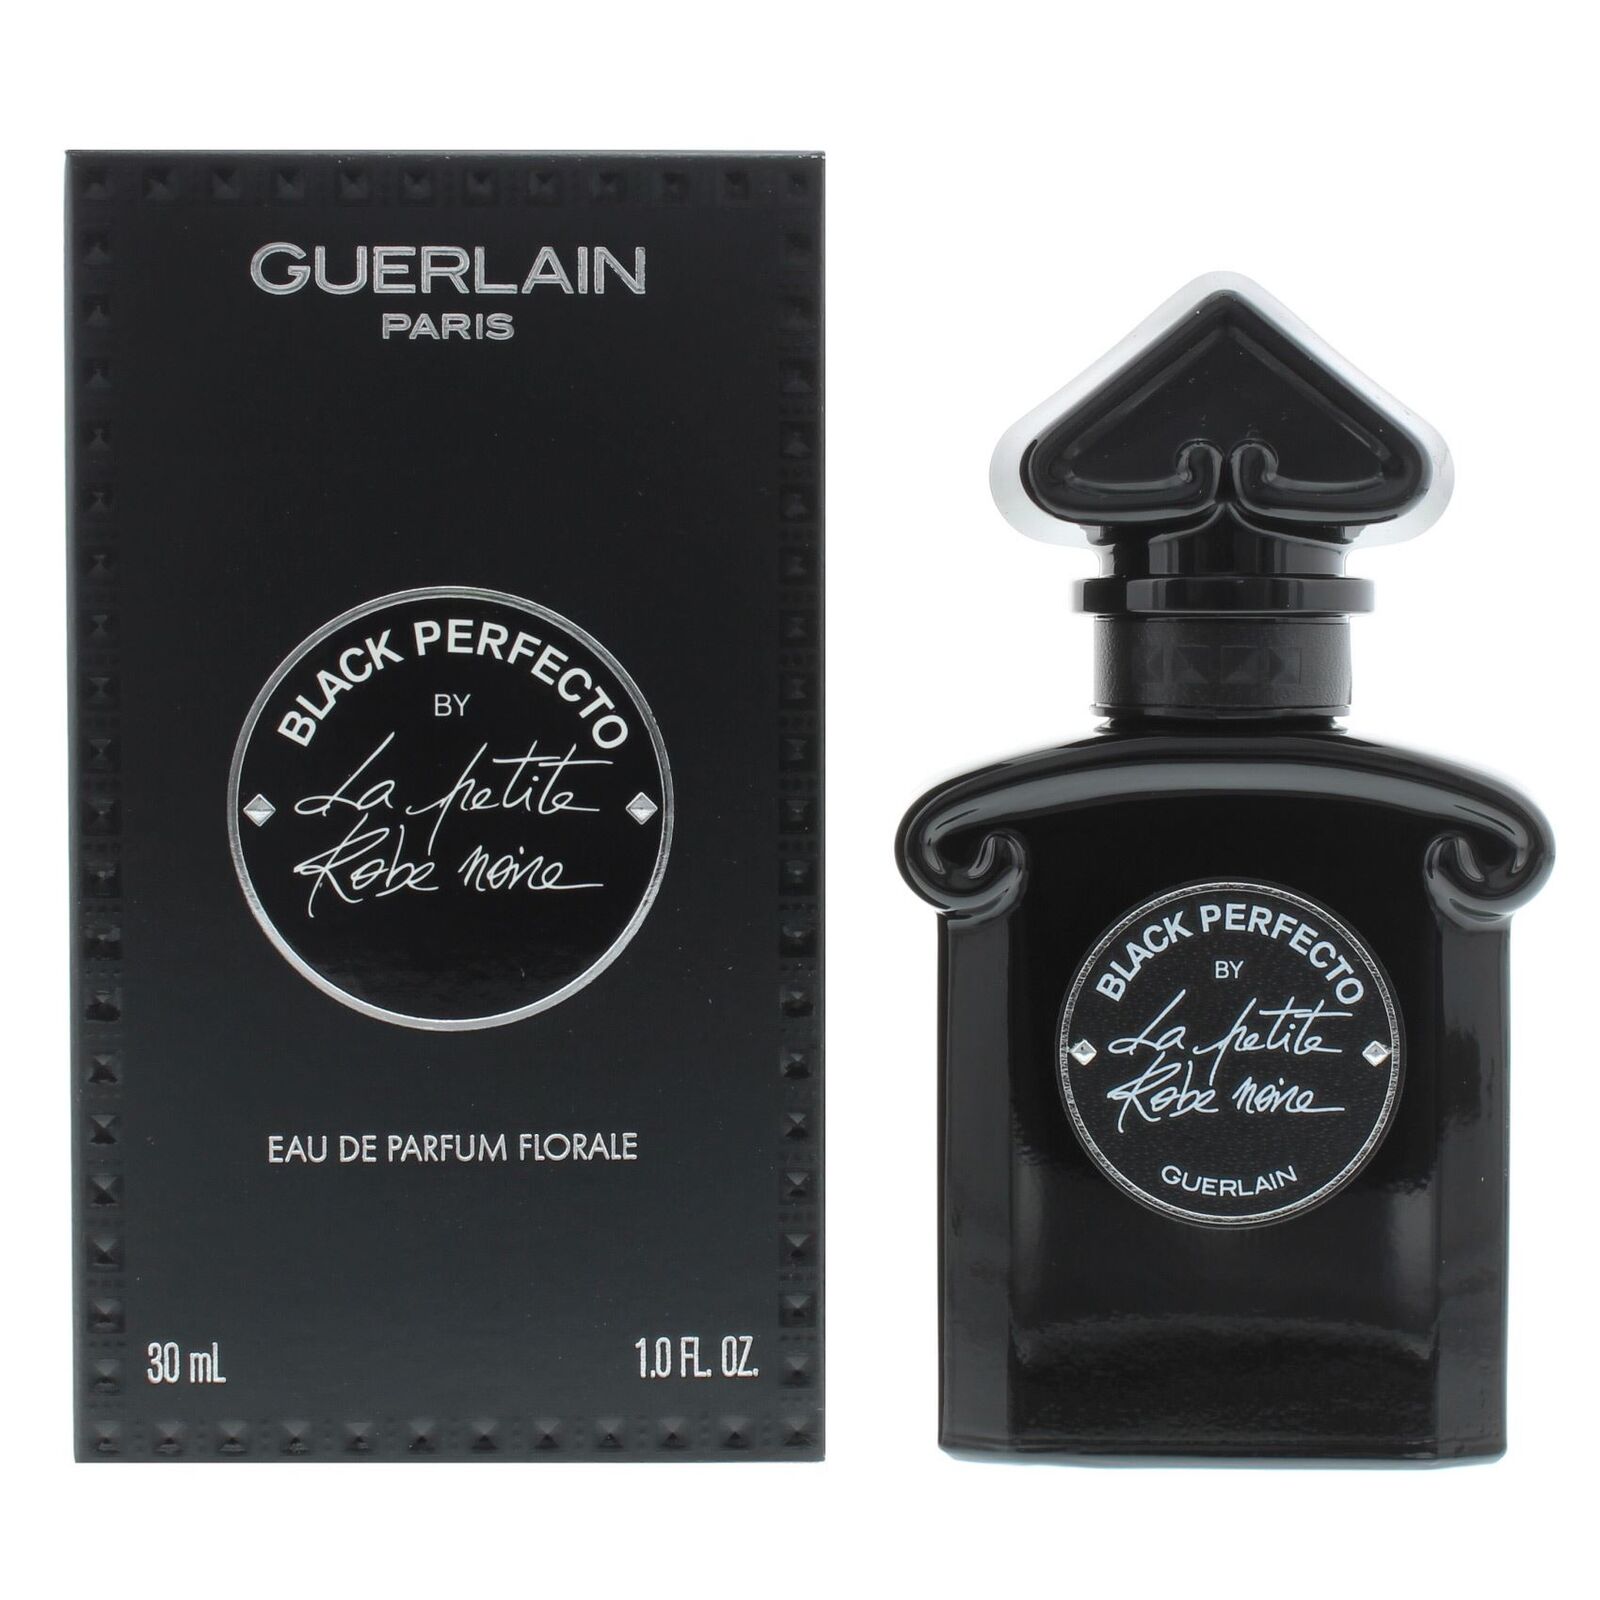 Guerlain Black Perfecto By La Petite Robe Noire Eau de Parfum Florale 30ml Spray